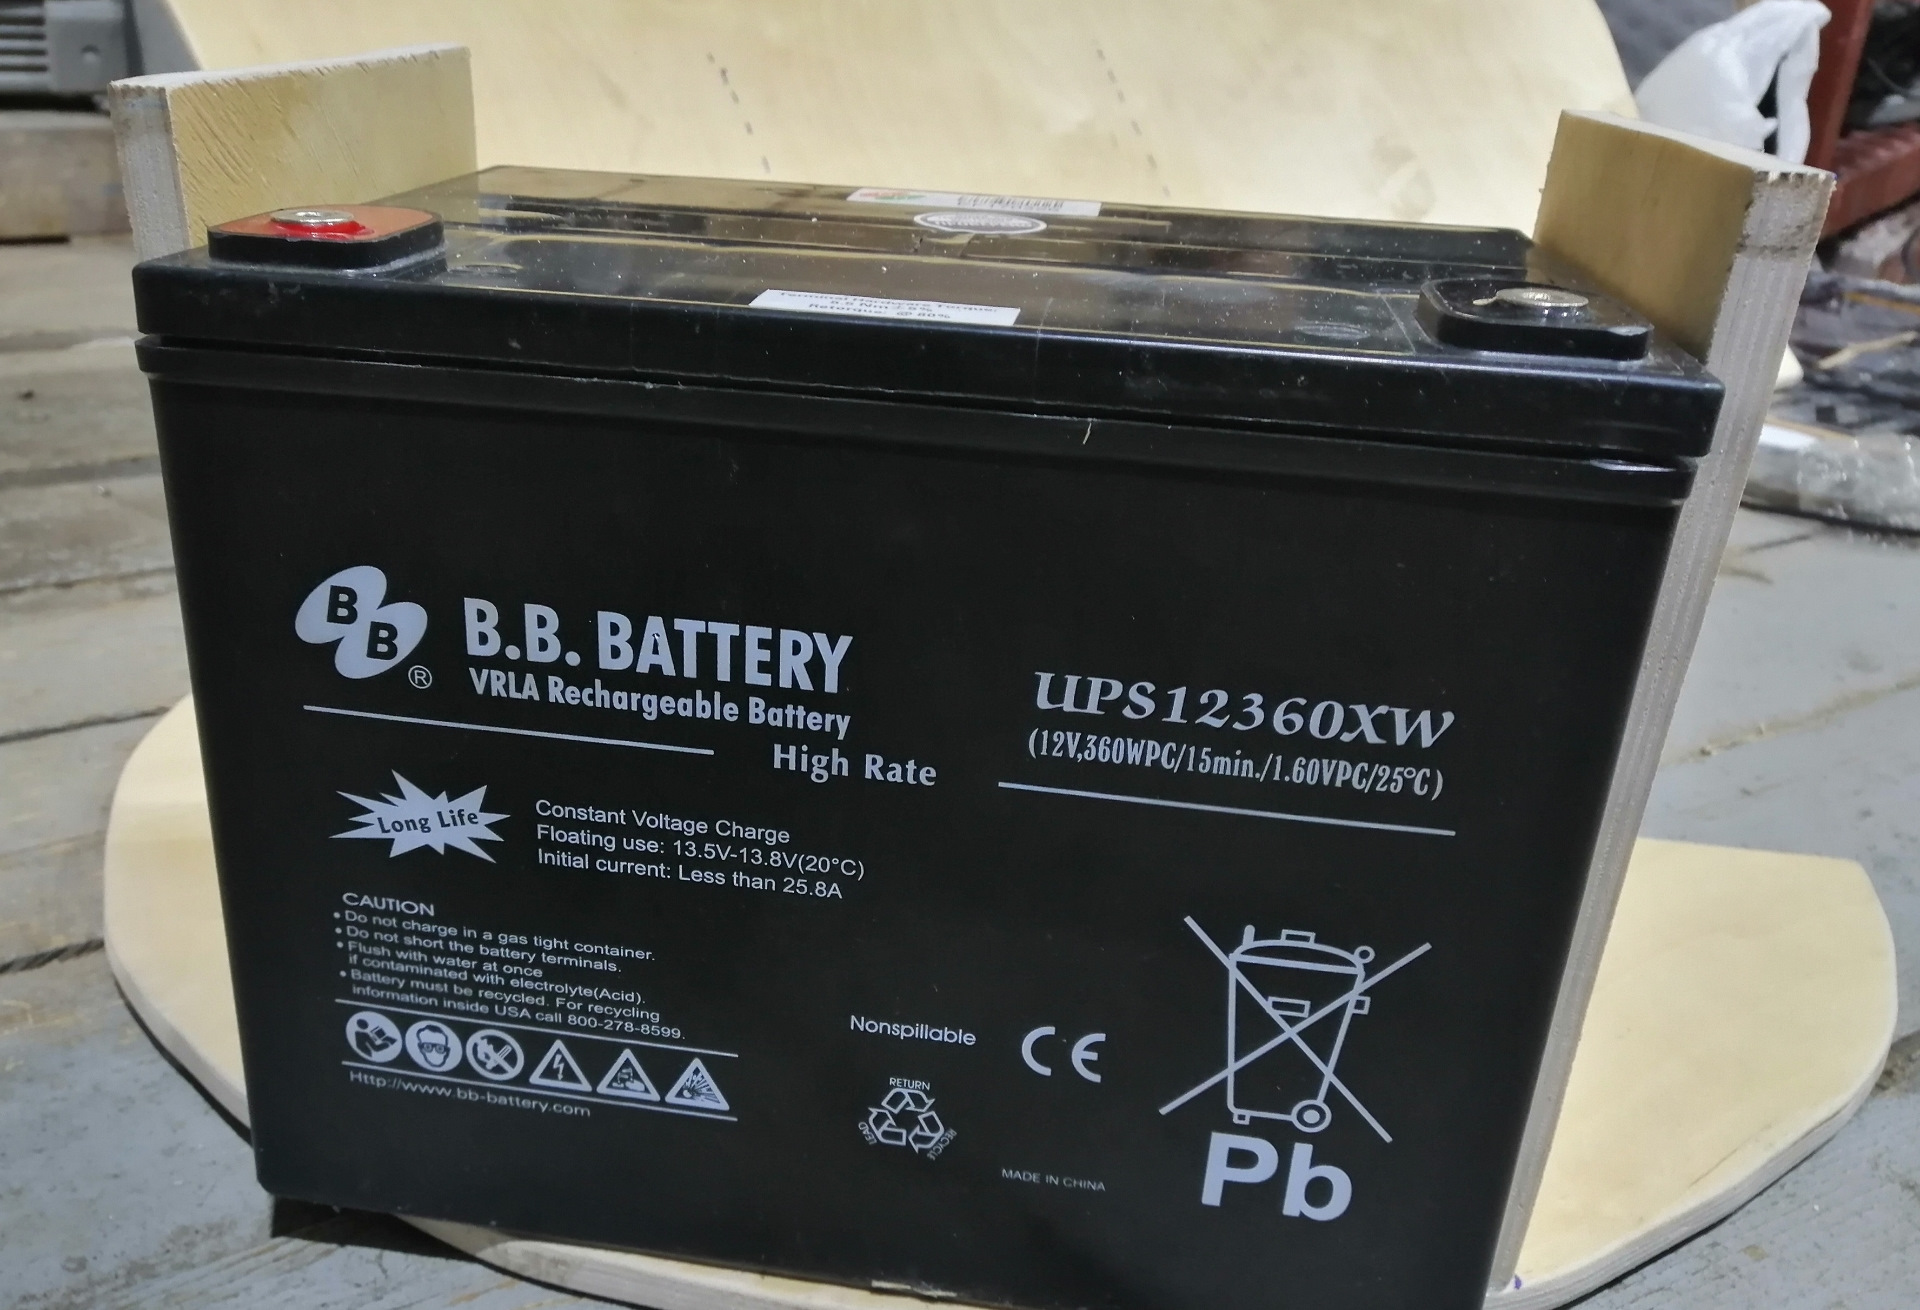 Ups battery. B.B. Battery ups 12440w. Battery ups 12360 7 f2 12v 360 w. BB Battery ups 12540w. Ups 12440w.